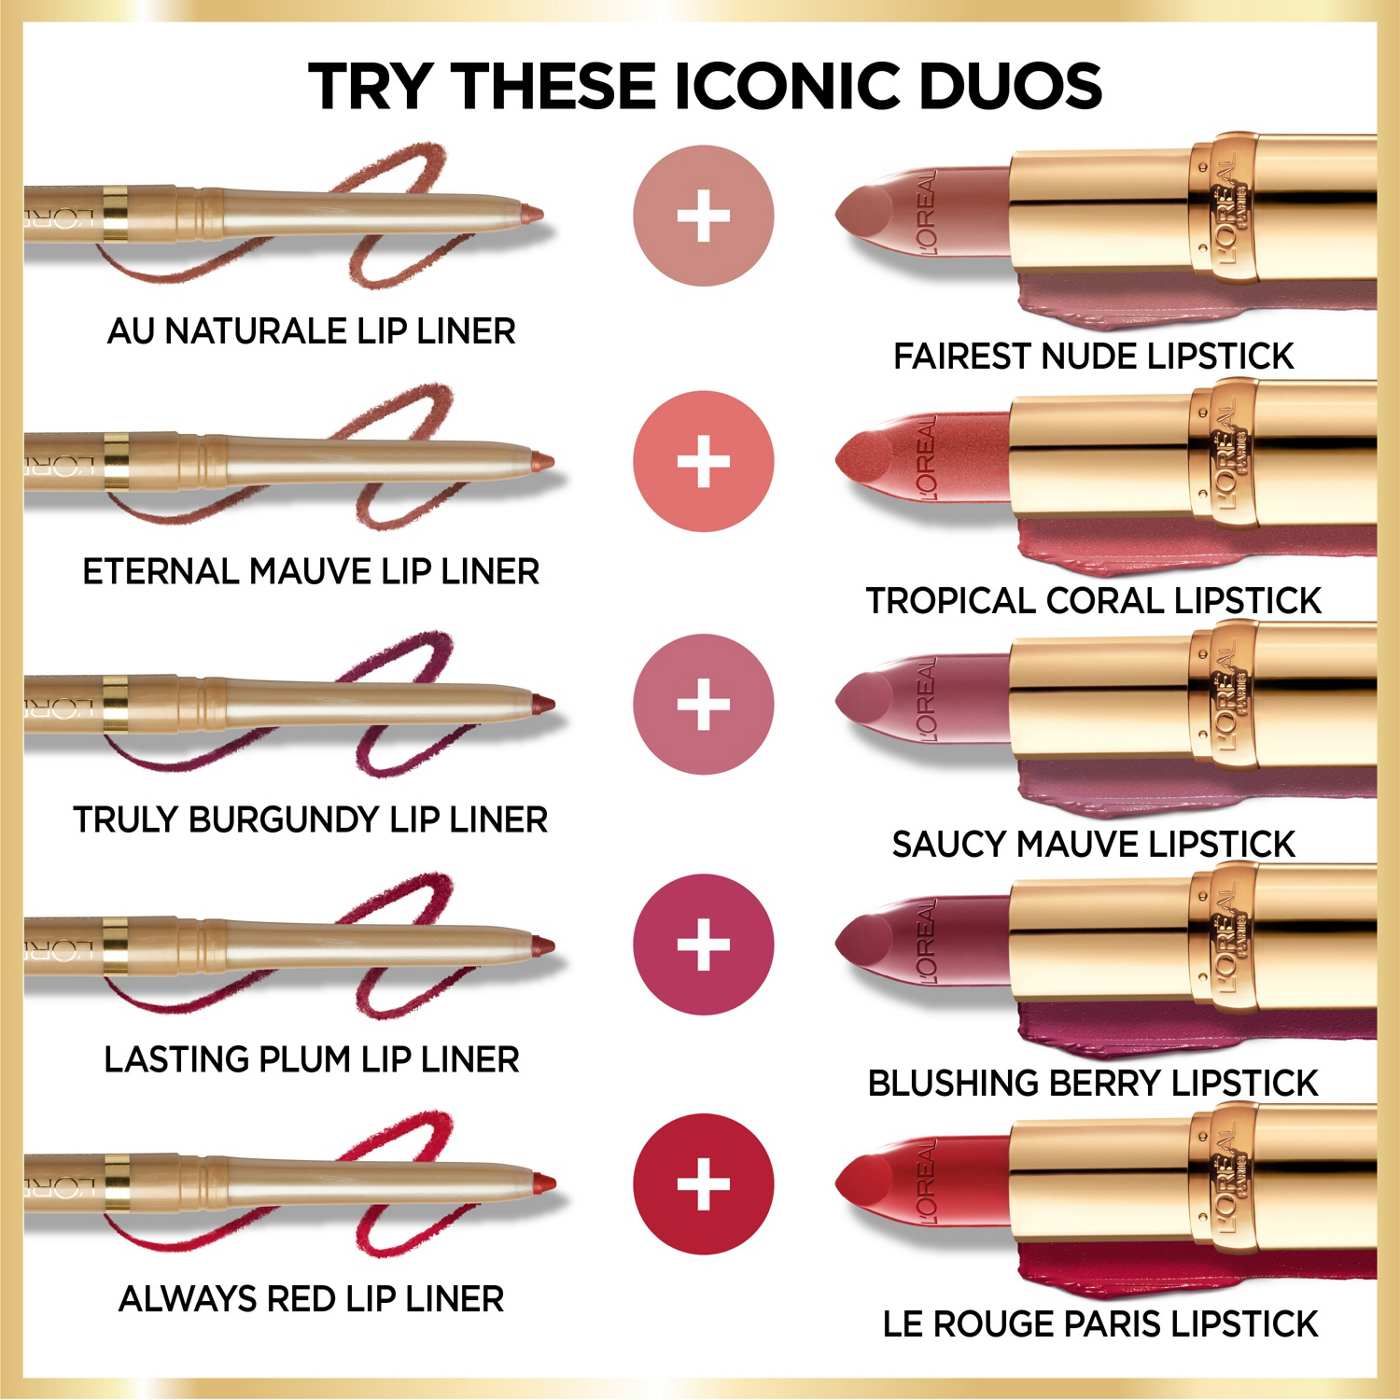 L'Oréal Paris Colour Riche Original Satin Lipstick - Sugar Plum; image 3 of 5